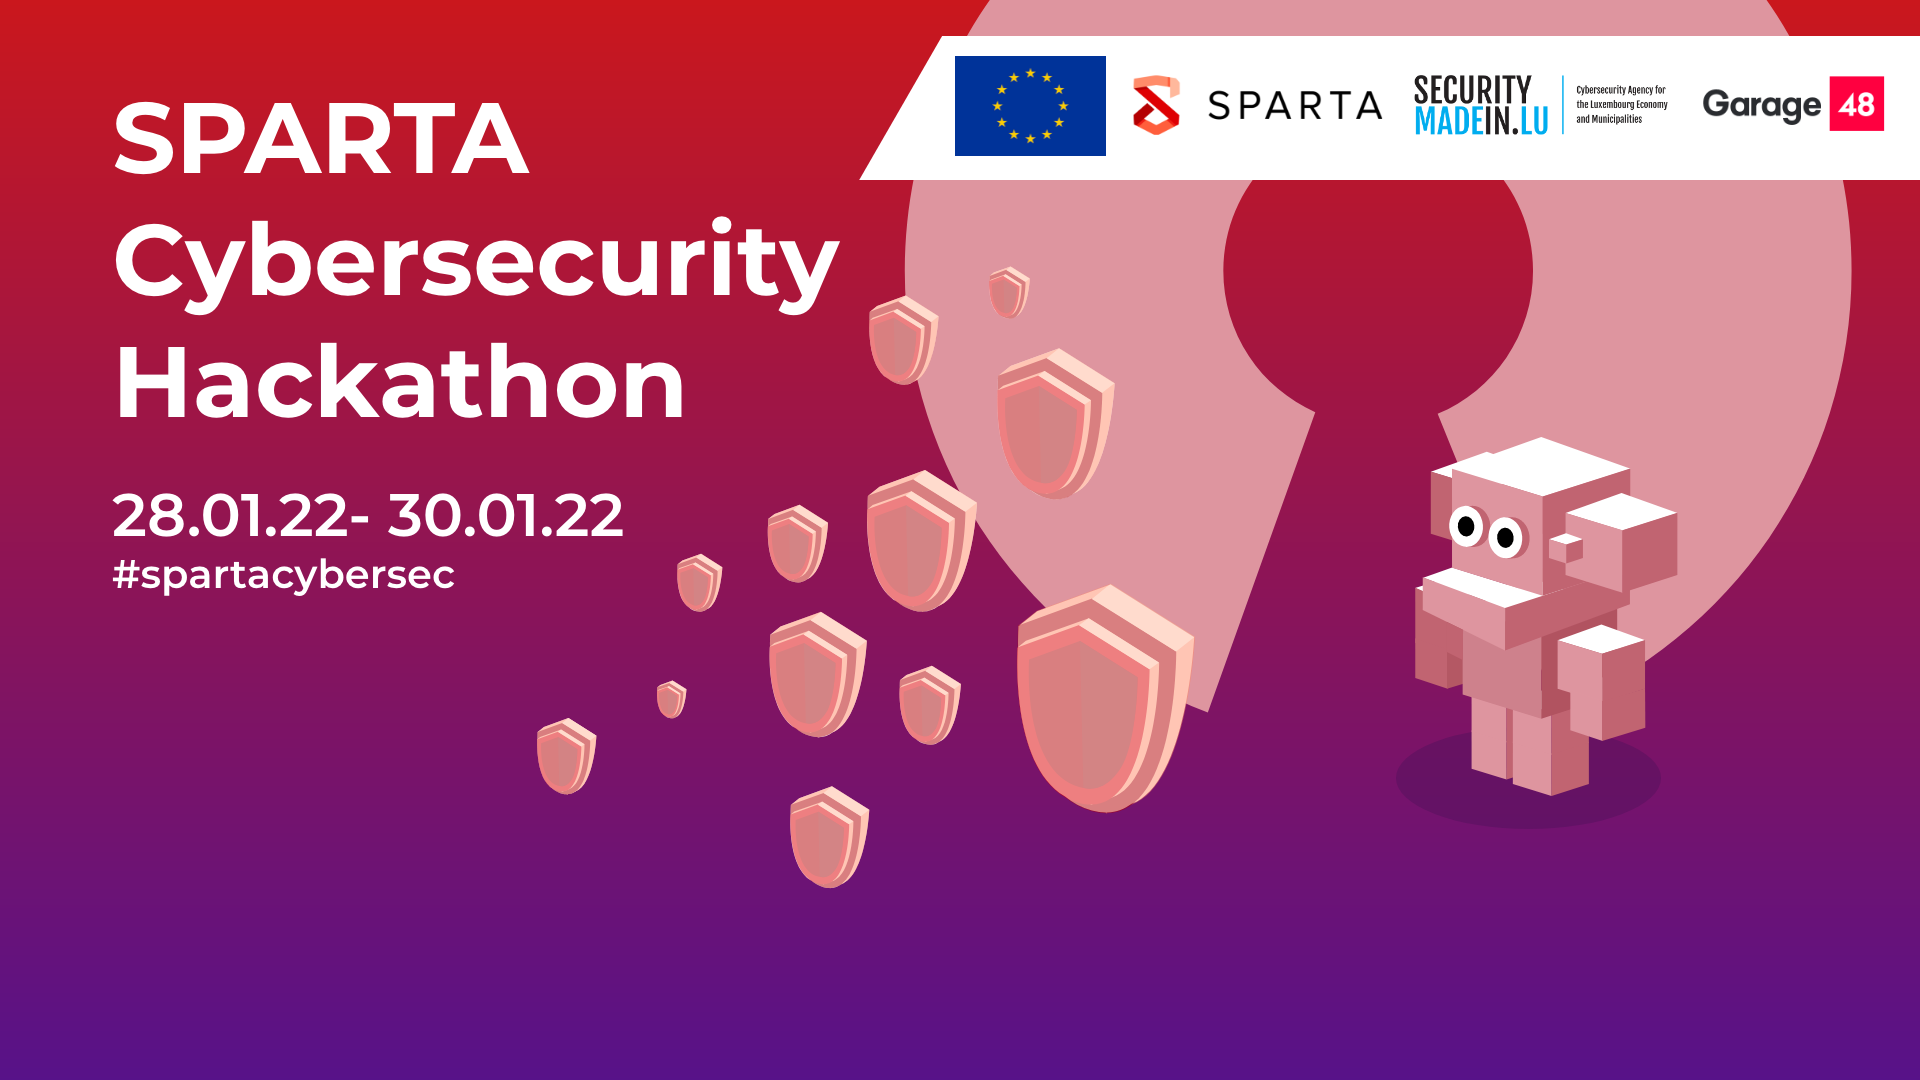 Sparta Cybersecurity Hackathon